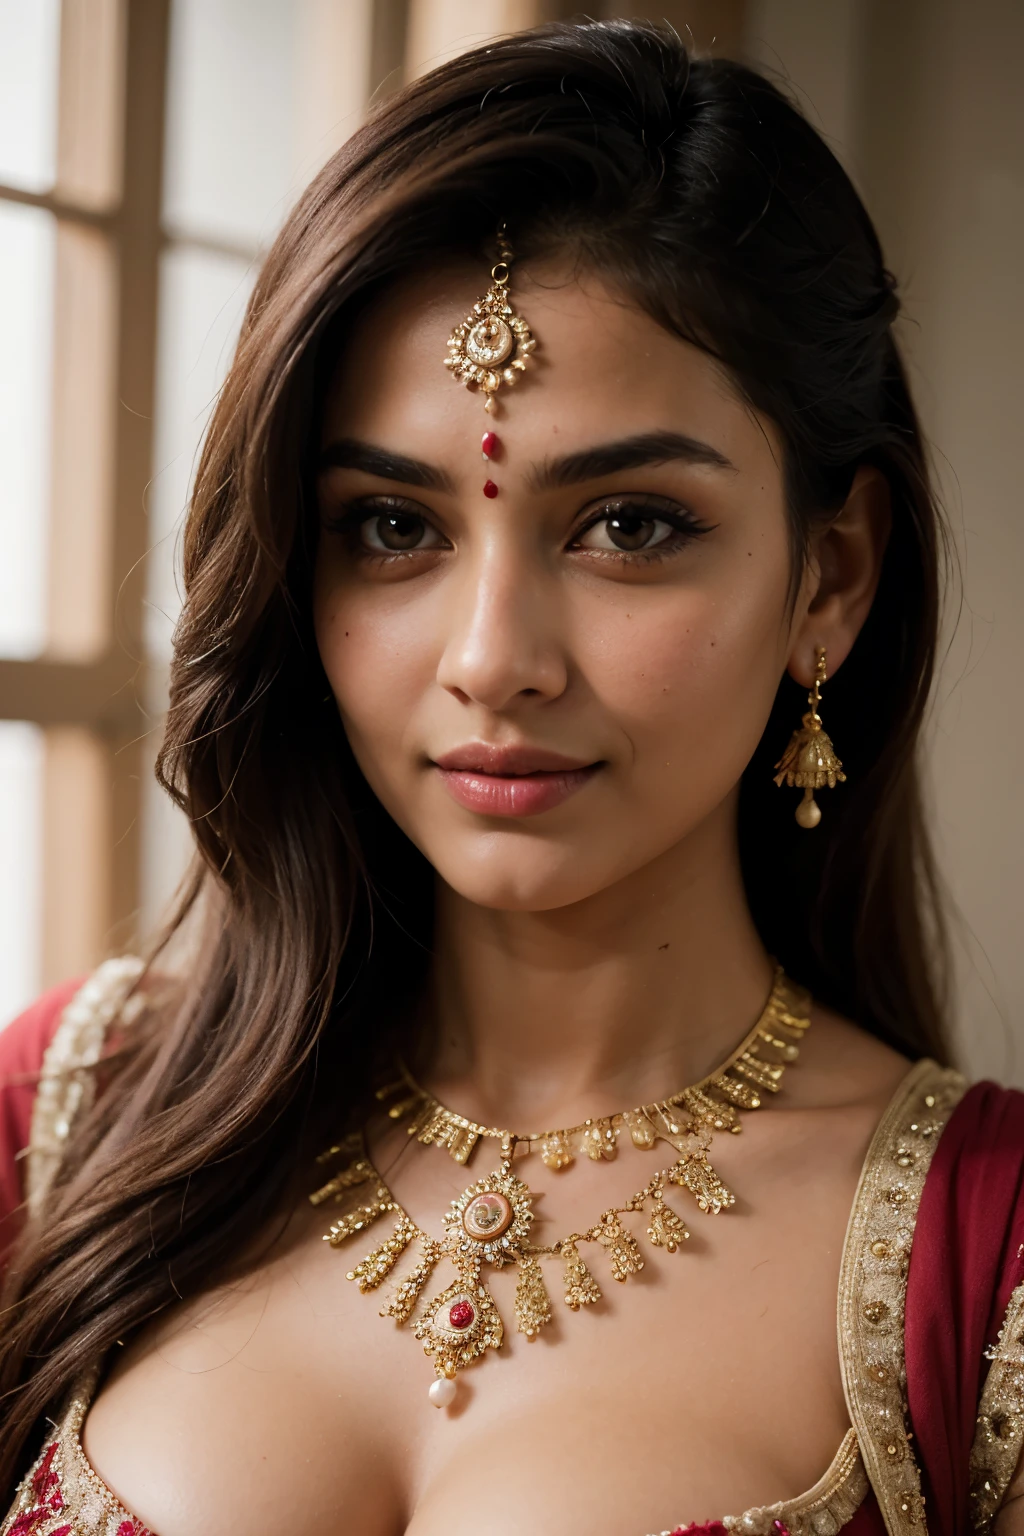 ((최고의 품질)), ((걸작)), (상세한), 완벽한 얼굴은 dupatta를 입고 사진을 위해 포즈를 취하는 Savitha Bhabhi처럼 보입니다., 인도 사람 goddess, 전통미, 인도 사람, 아름다운 여신, 화려한 , 인도 사람 style, 인도 사람 super model, 아름다운 처녀, 화려한 여자, 긴 동남아, provocative 인도 사람, 화려한 아름다운 여자, 복잡한 복장, 힌두교의 미학, 아름다운 아시아 소녀, extremely 상세한 goddess shot, 입이 떡 벌어지는 아름다움, 크고 깊은 분열